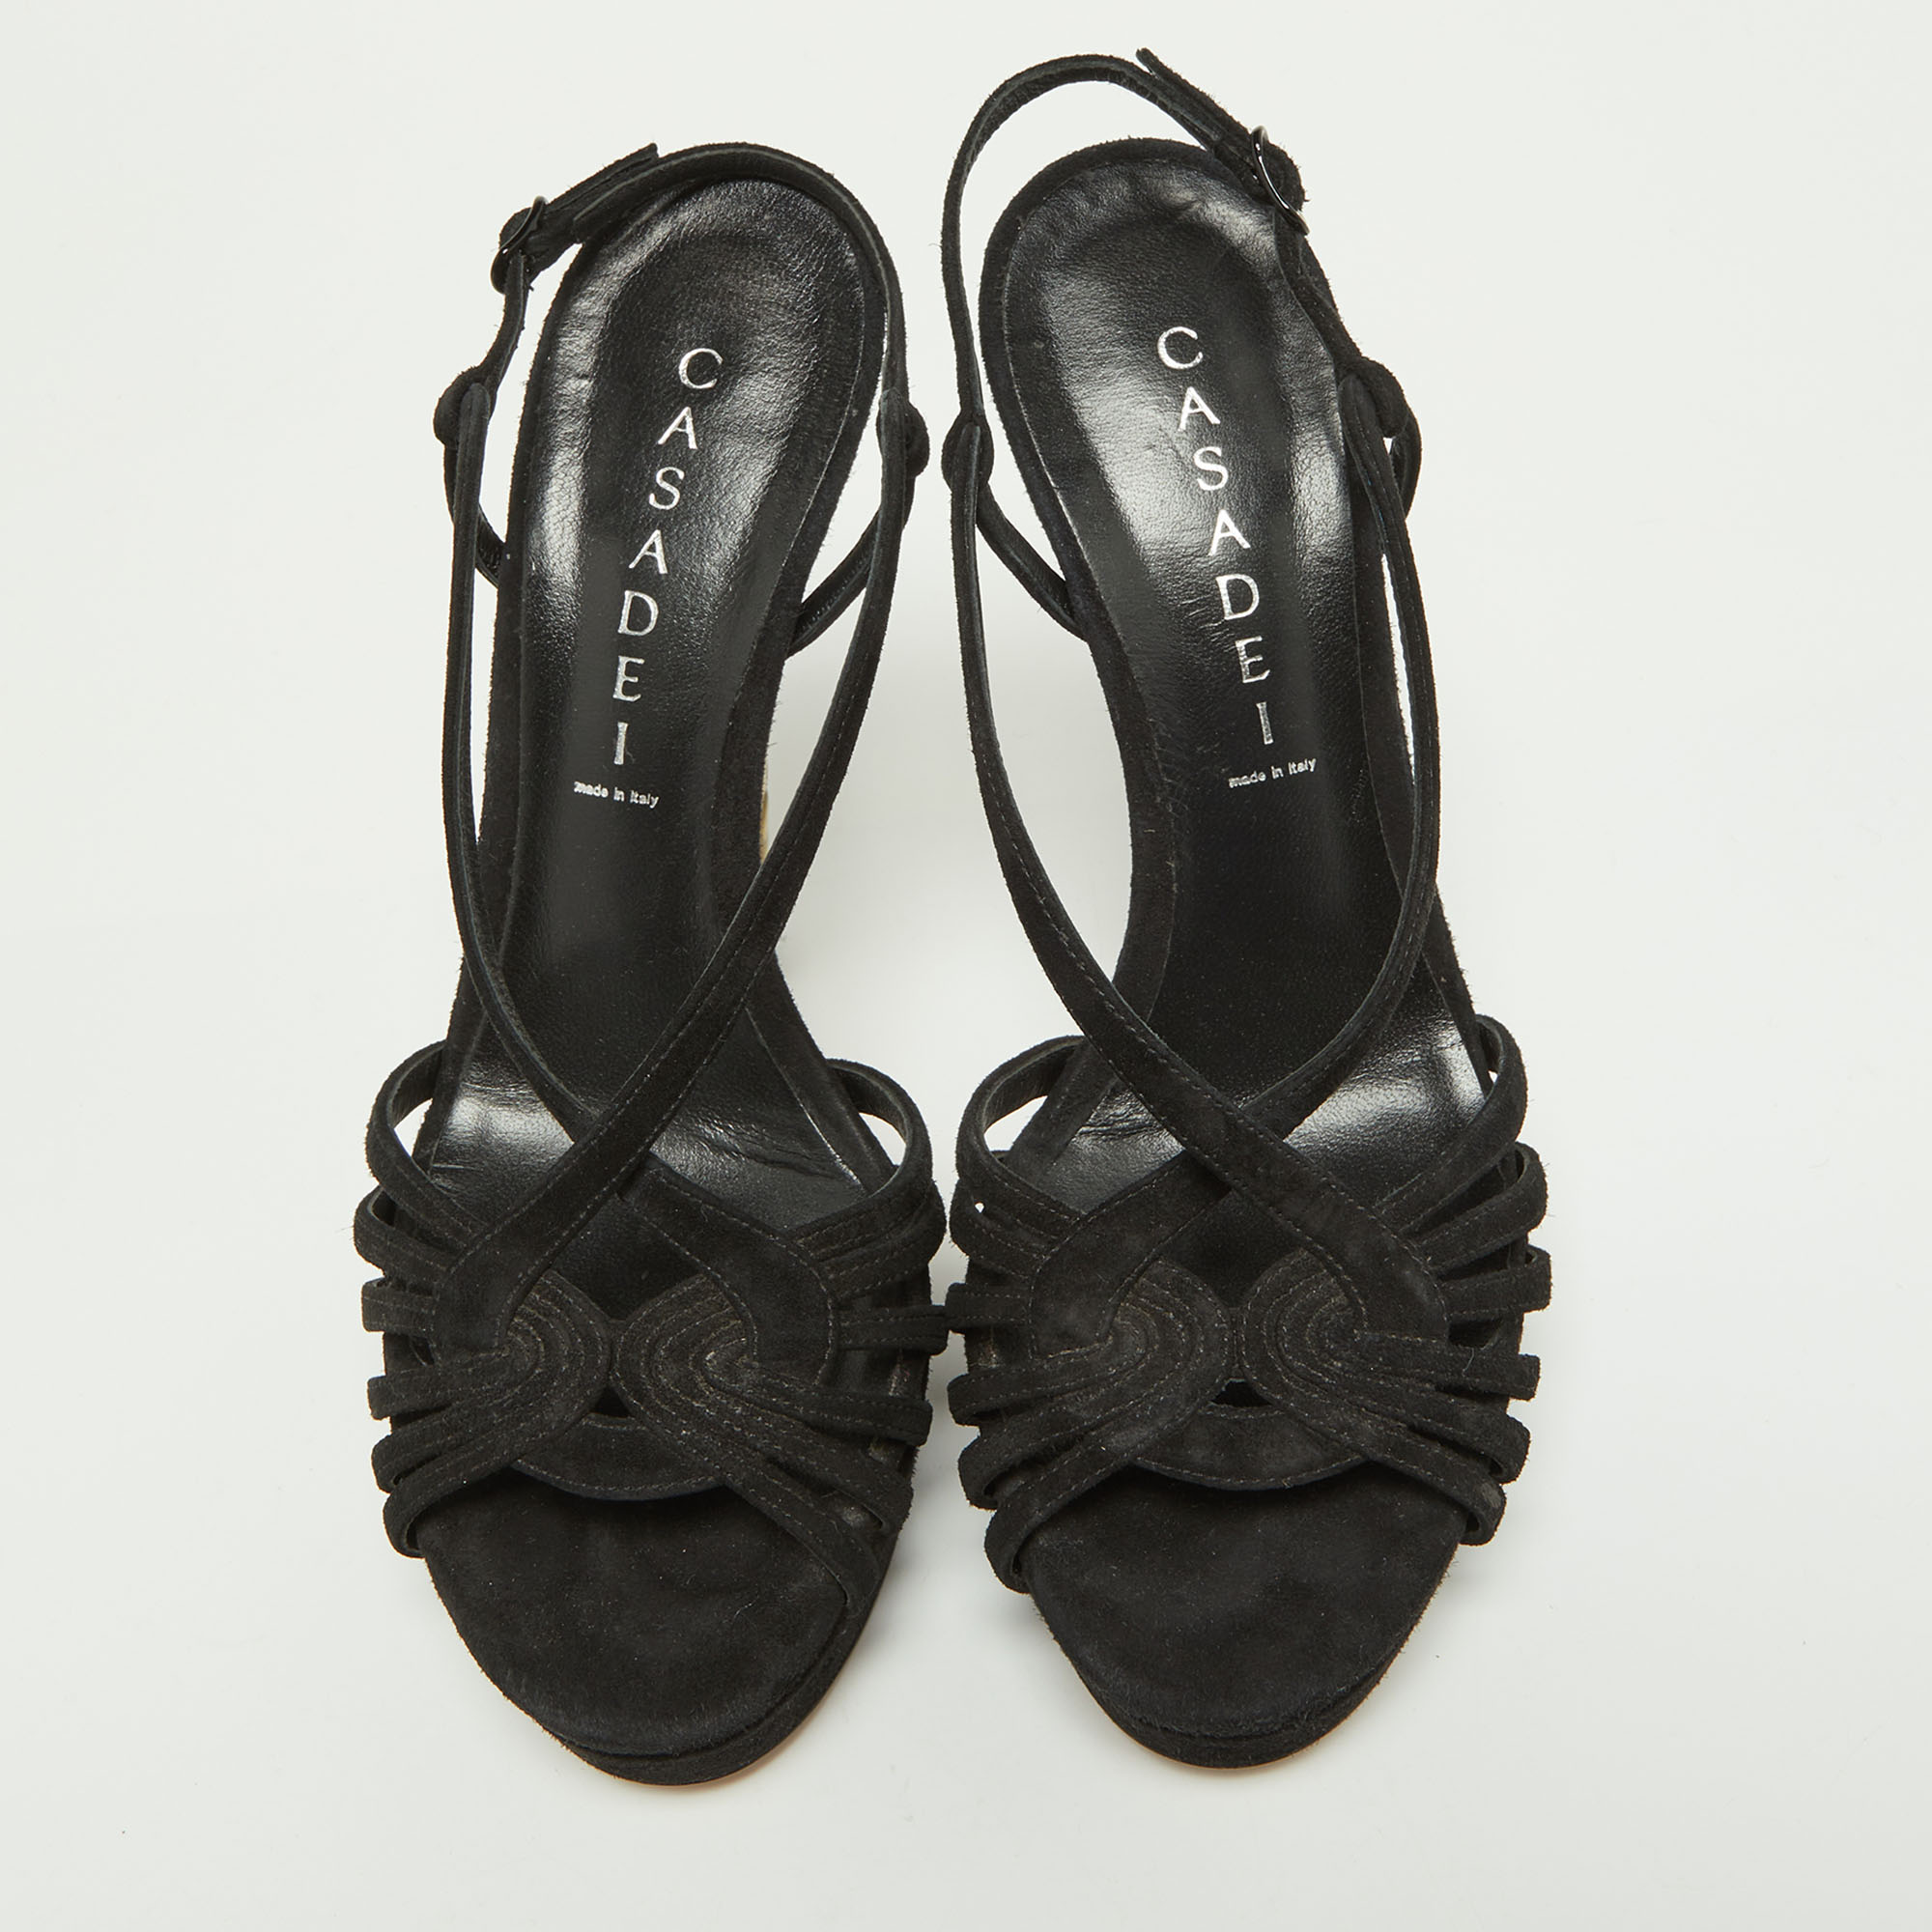 Casadei Black Suede Platform Strappy Sandals Size 37.5